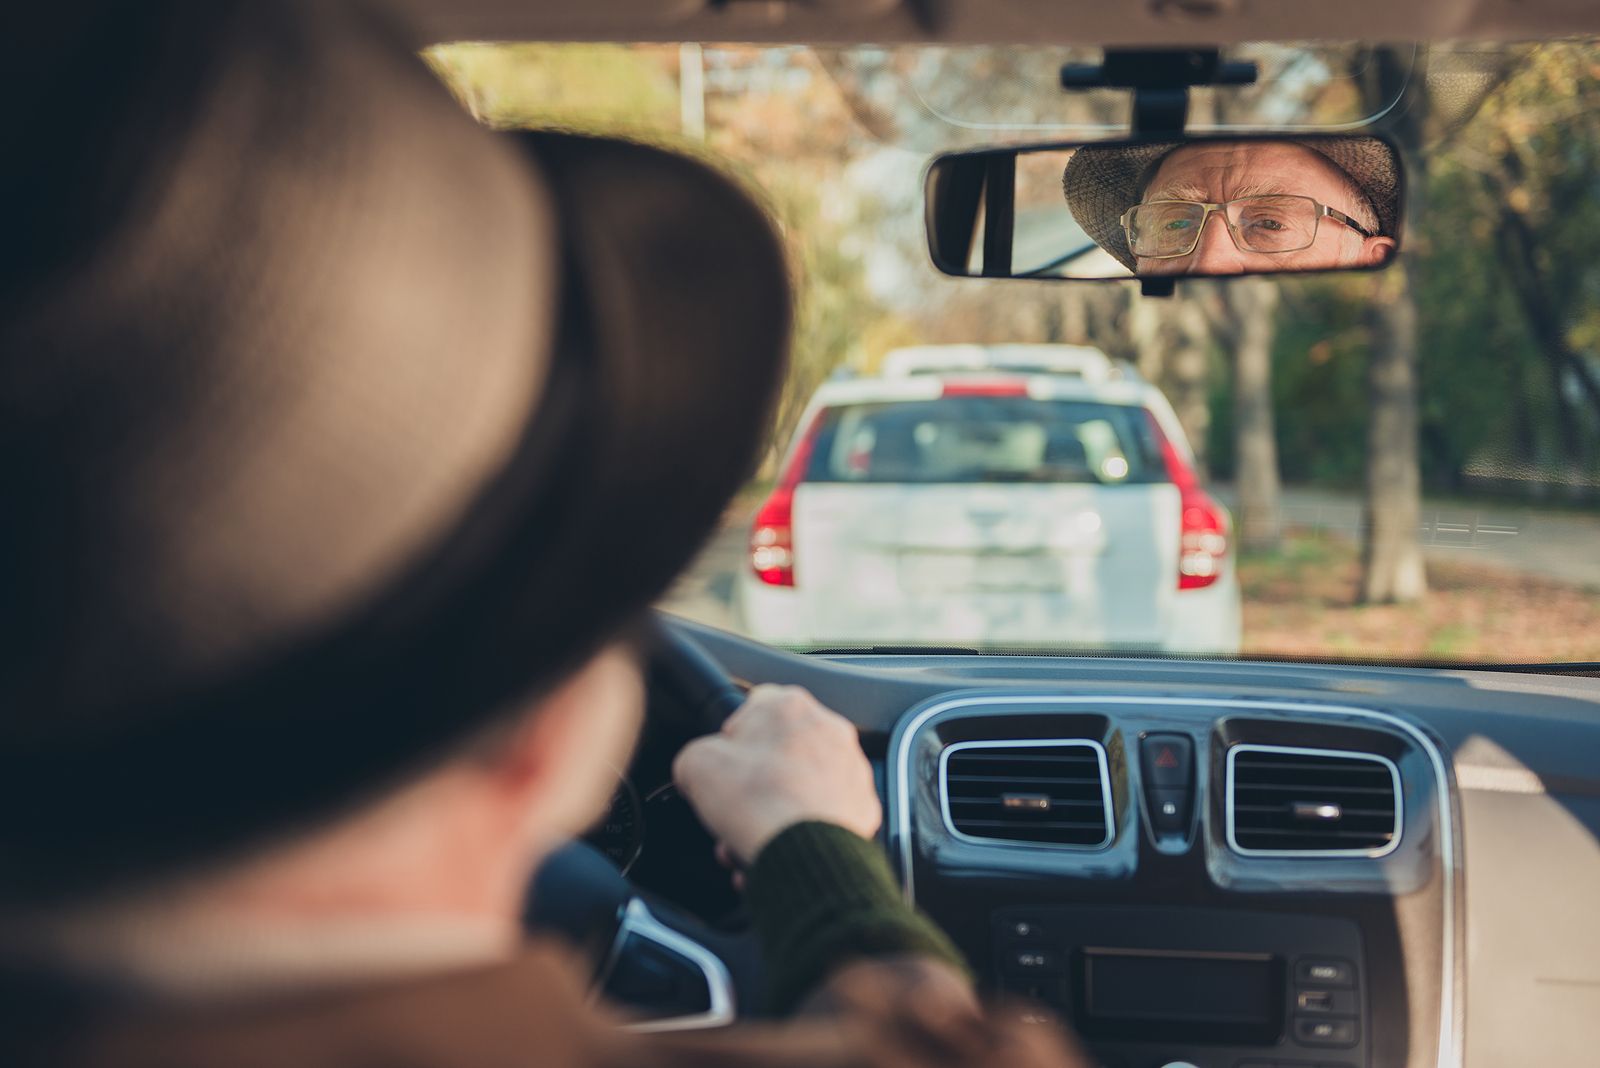 Renueva el carnet de conducir a los 99 años: "Hay mucho edadismo"